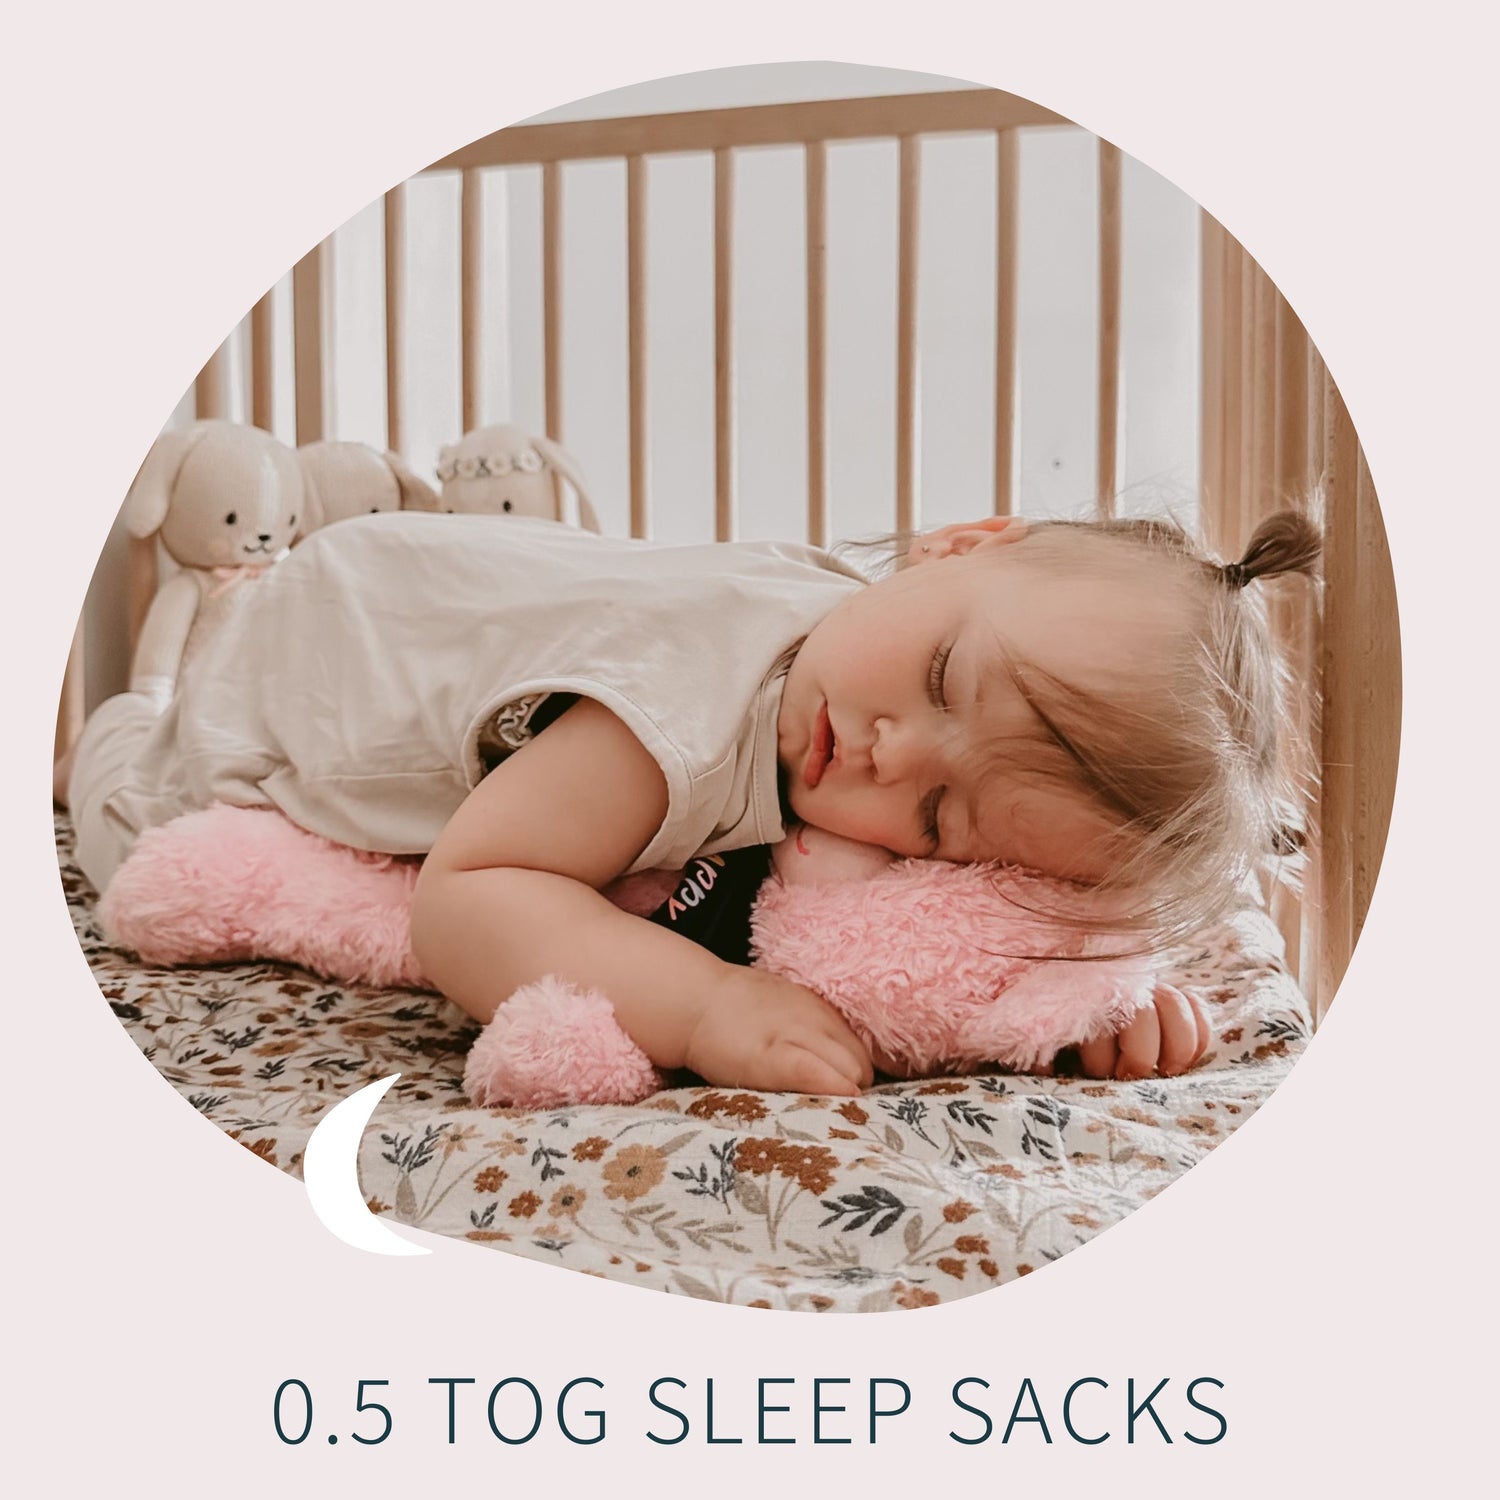 0.5 TOG Sleep Sacks